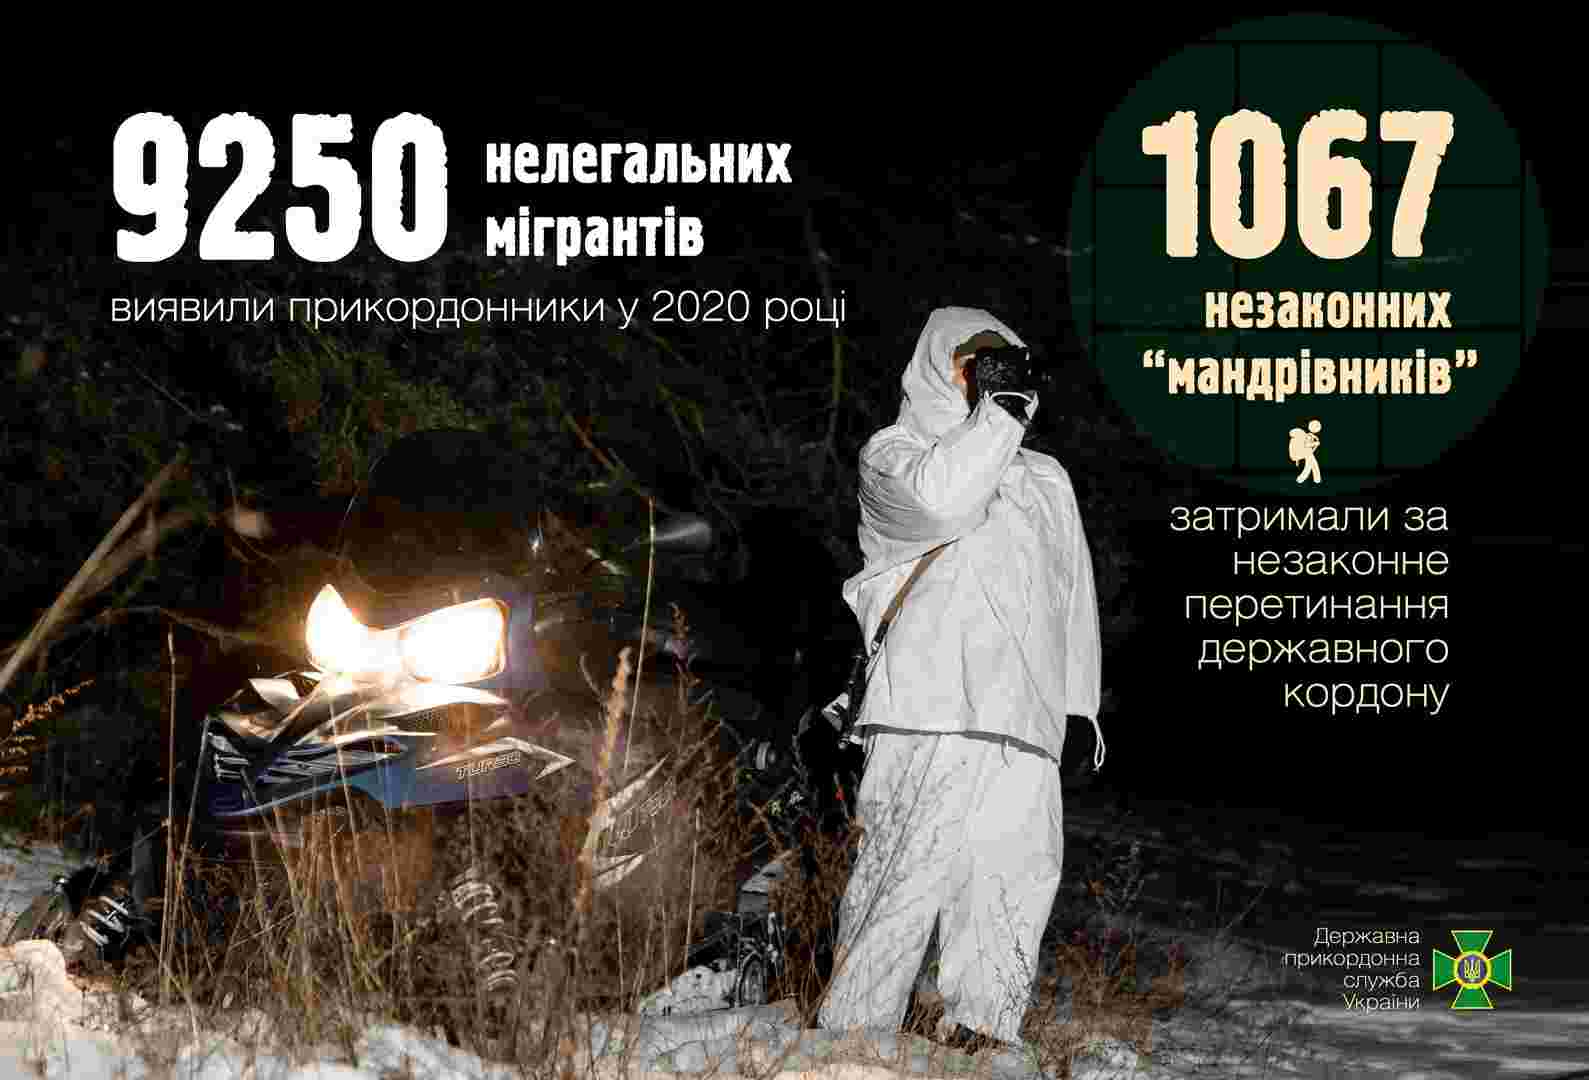 У минулому році українські прикордонники виявили 9250 нелегальних мігрантів